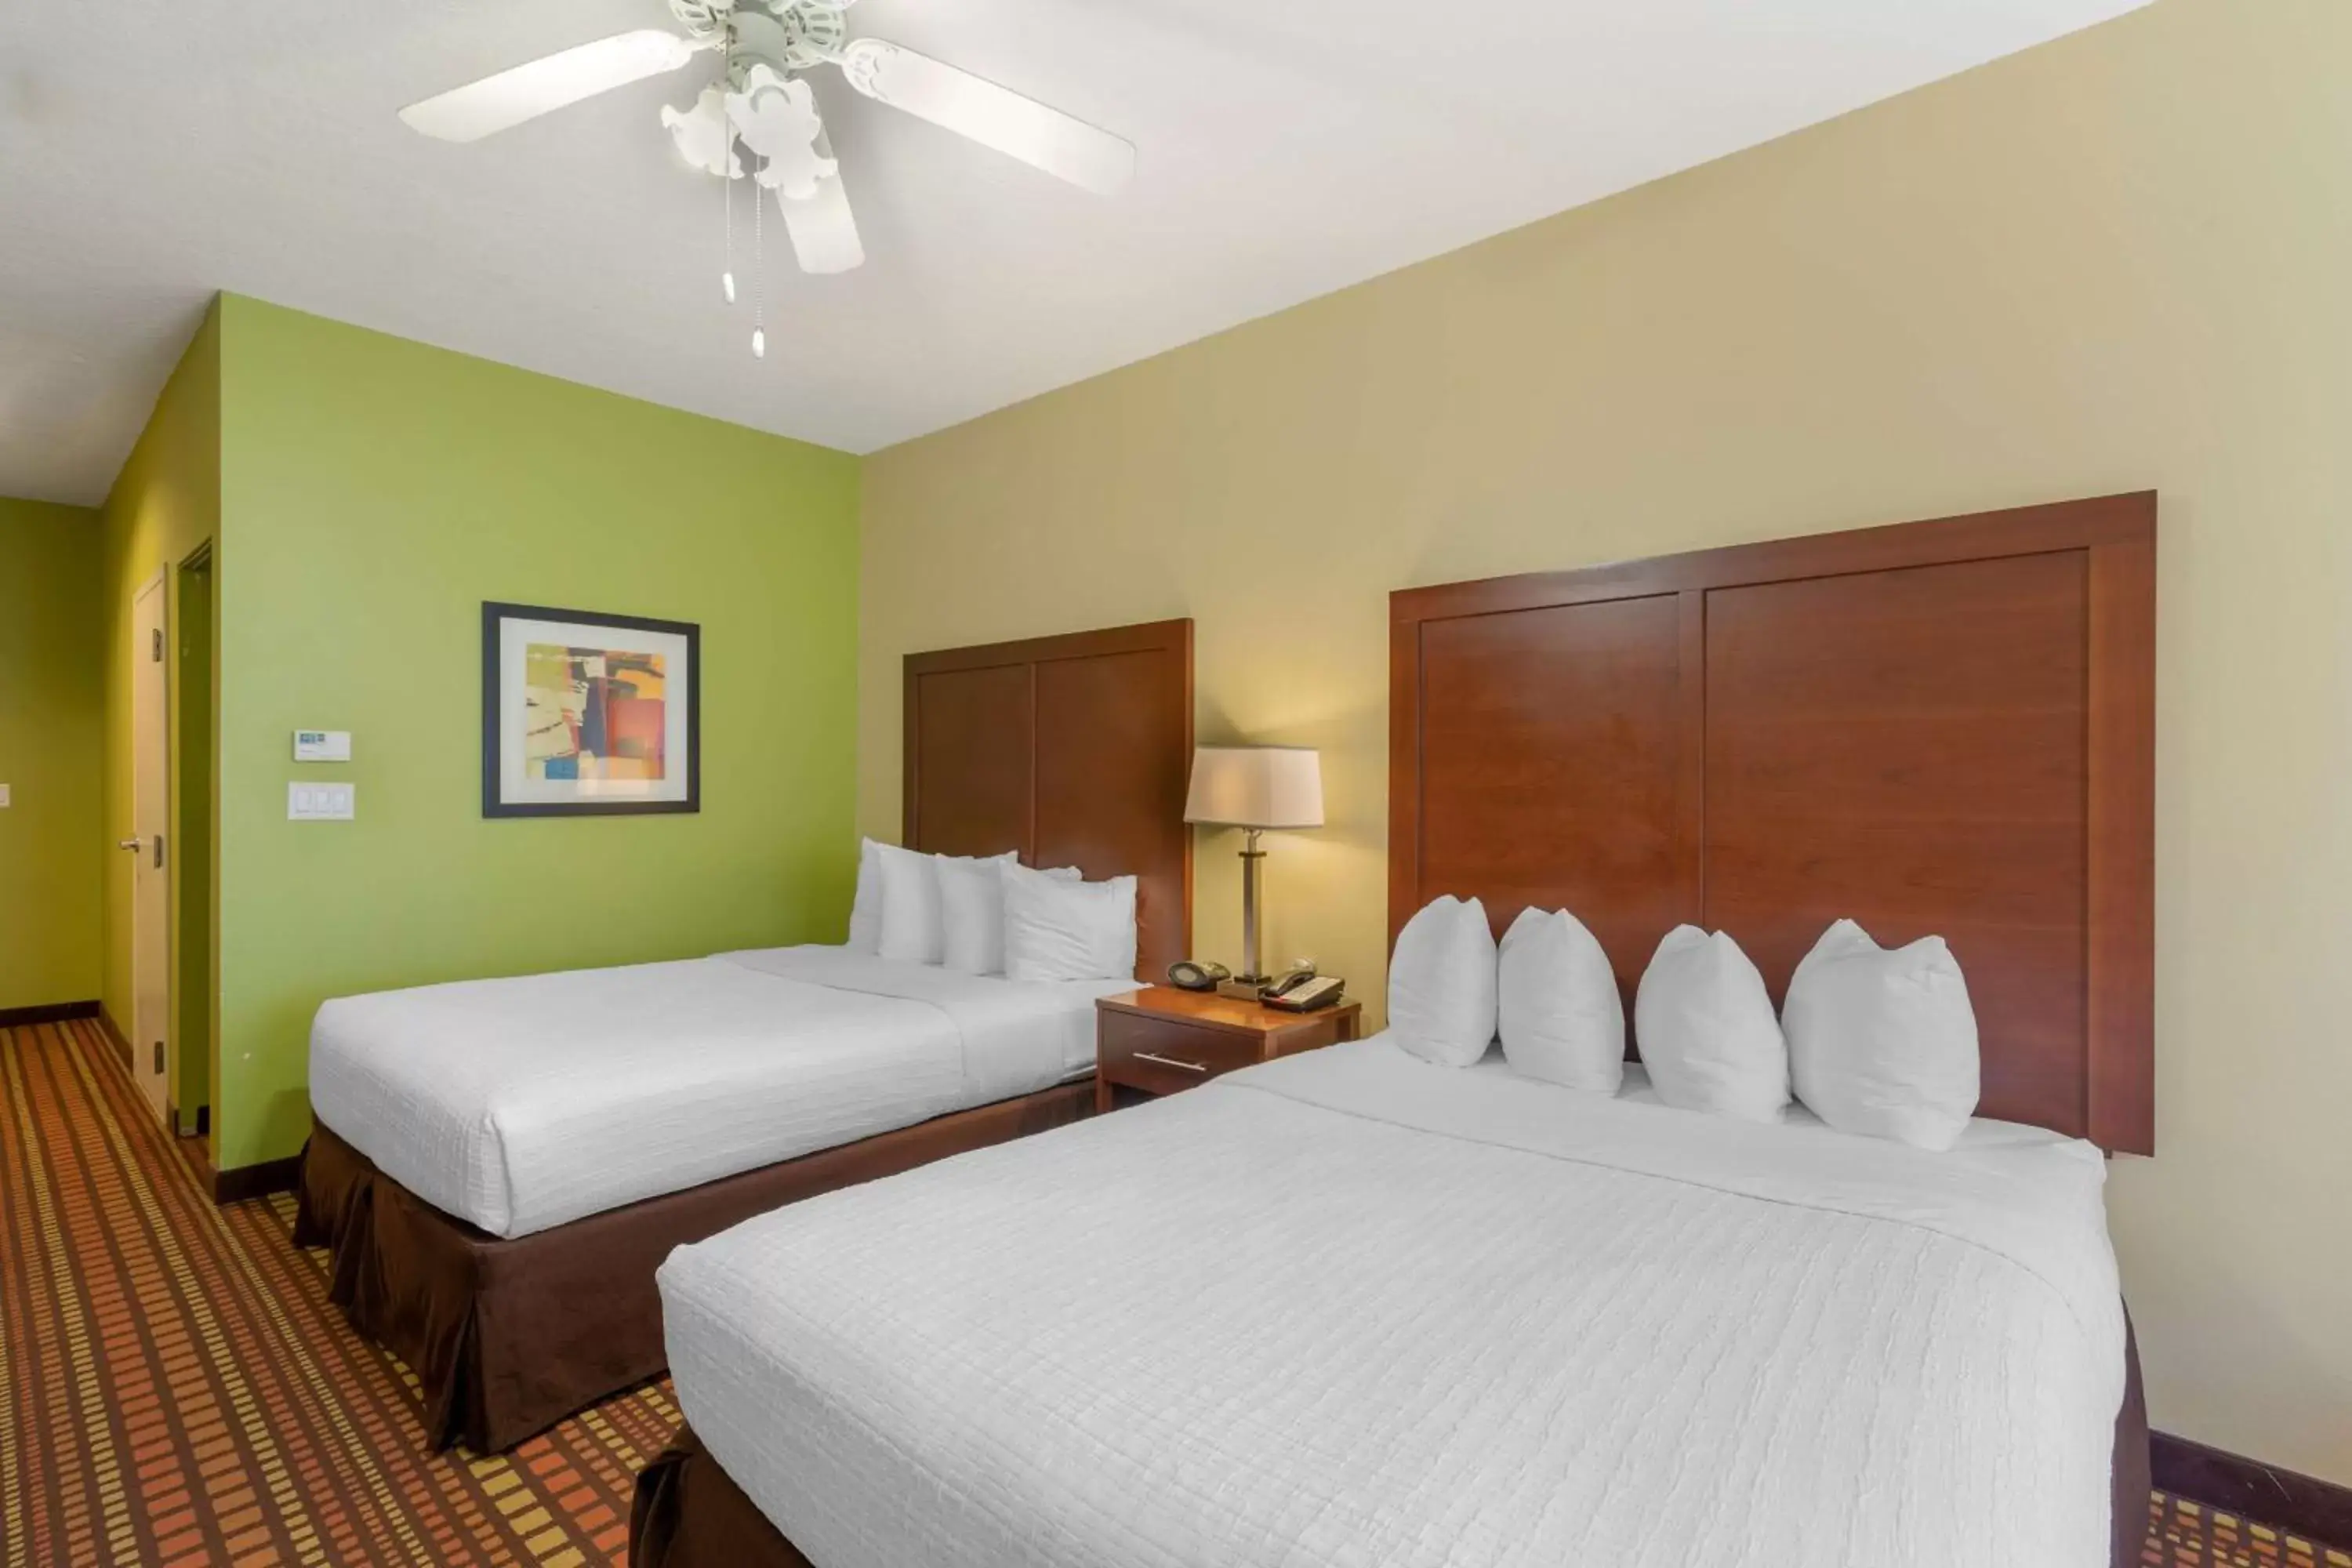 Bedroom, Bed in Best Western Plus Gadsden Hotel & Suites